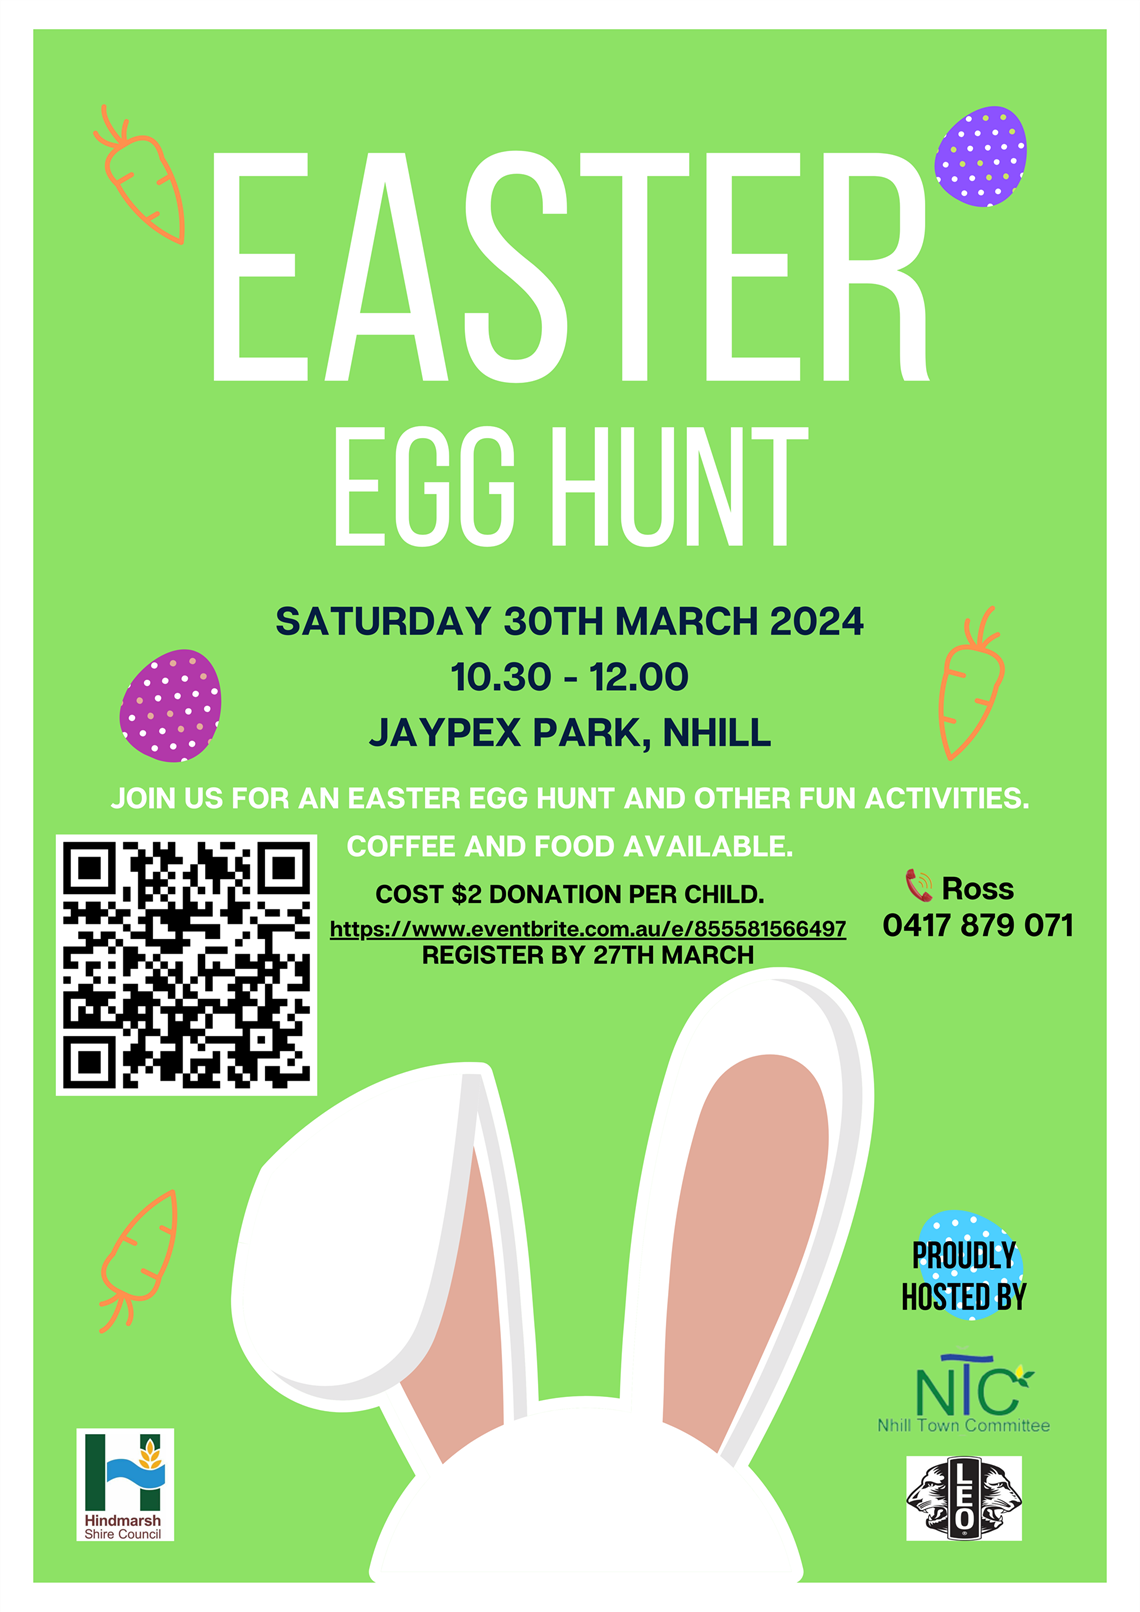 Easter Egg Hunt Poster_final2.png